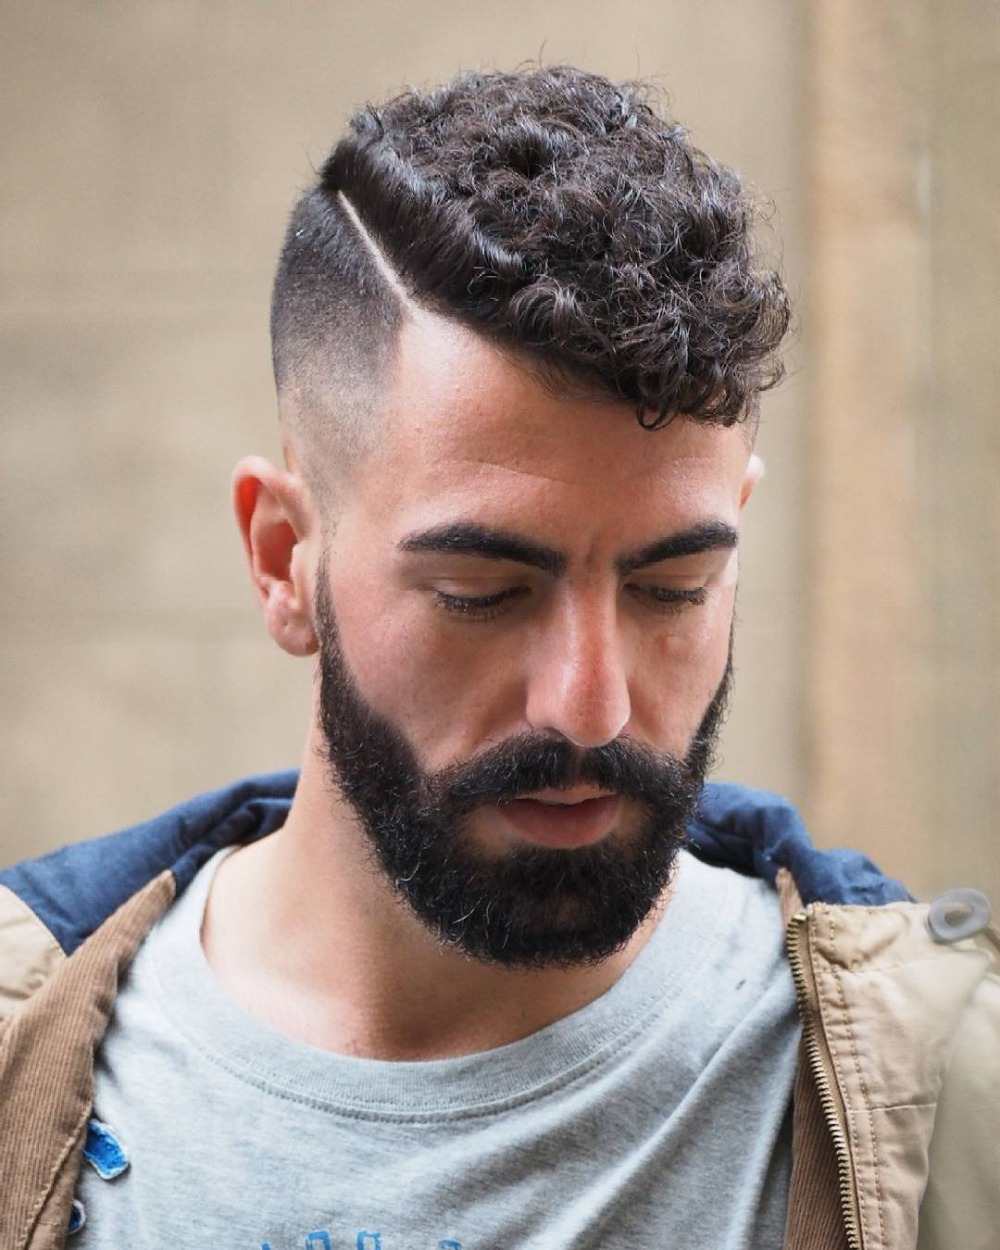 außergewöhnliche männerfrisur für lockiges haar mit kurz geschnittener kopfseite